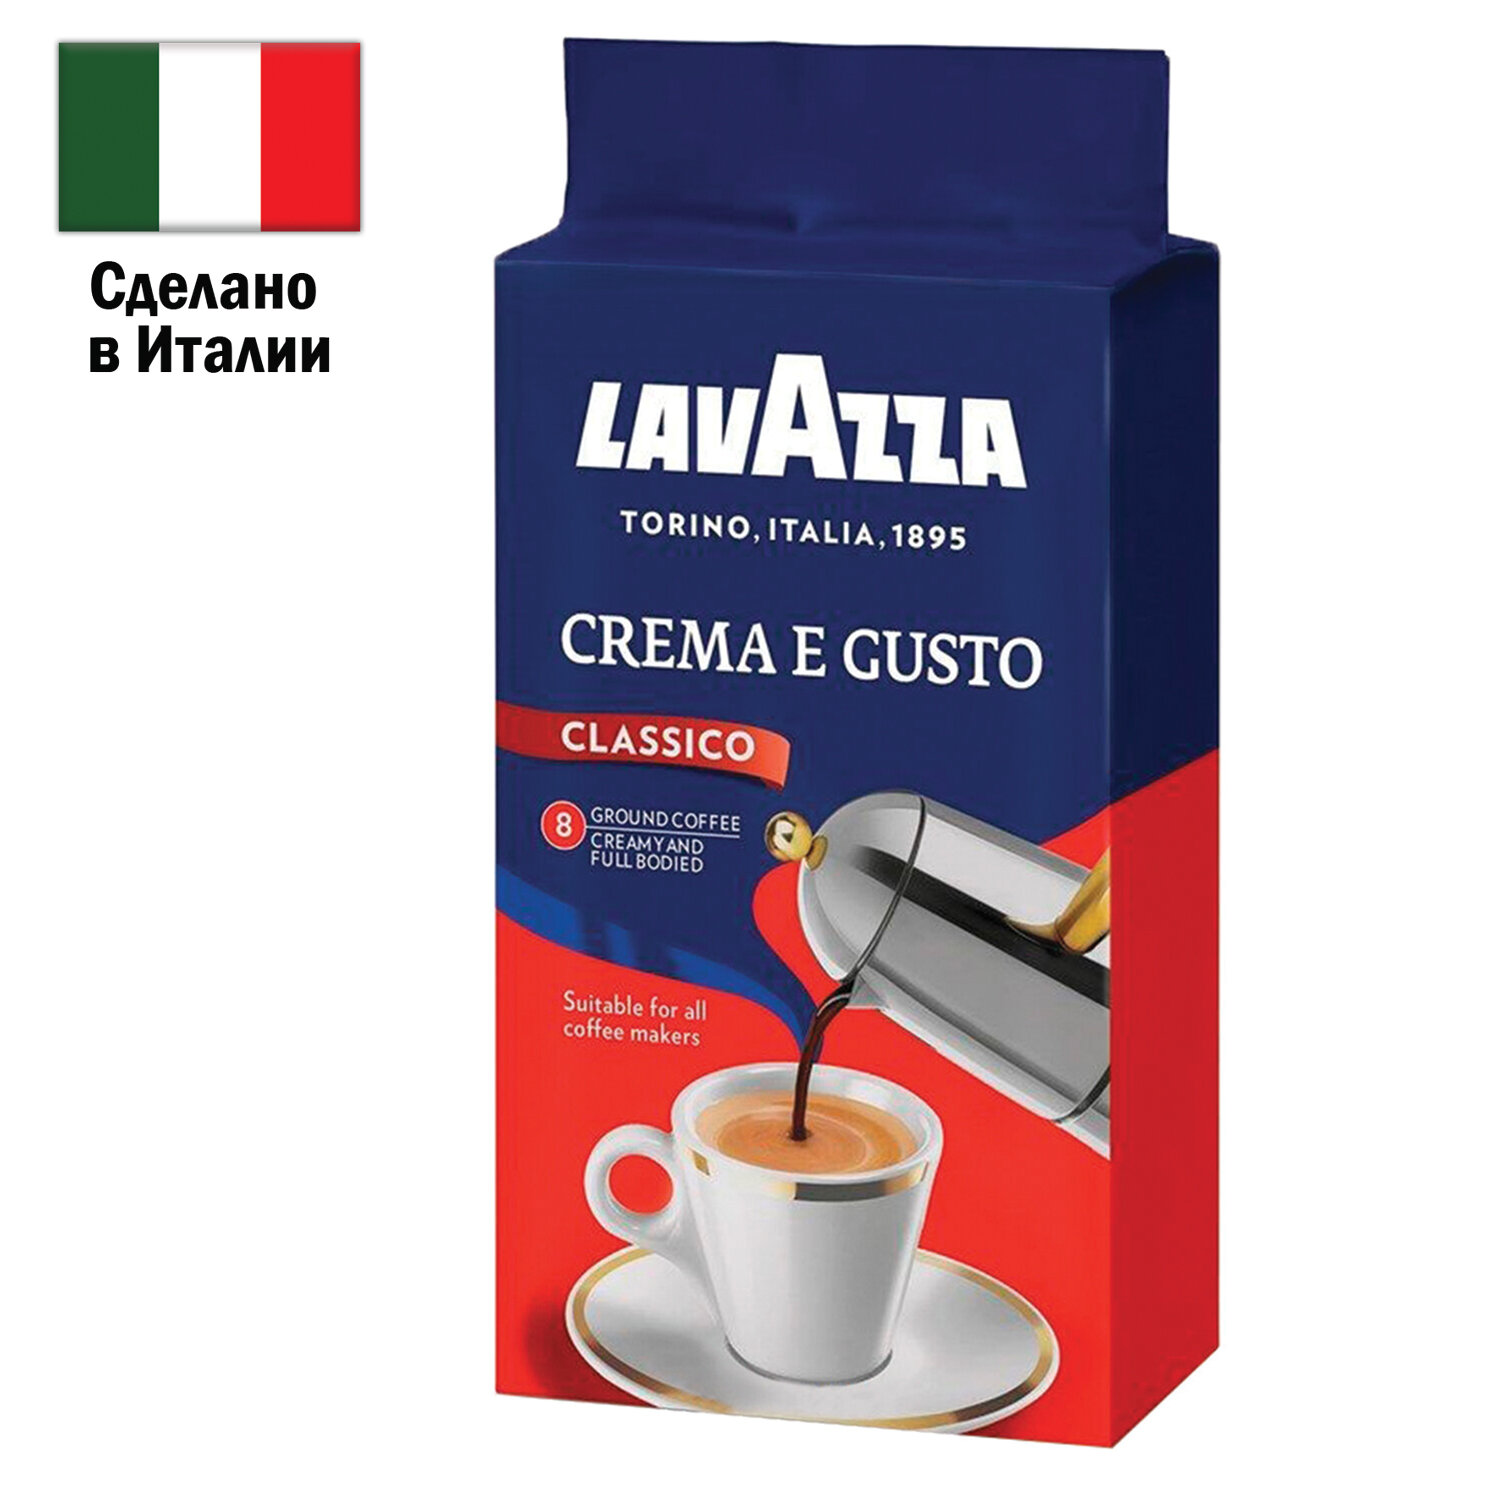 Кофе LAVAZZA 3876, комплект 2 шт.